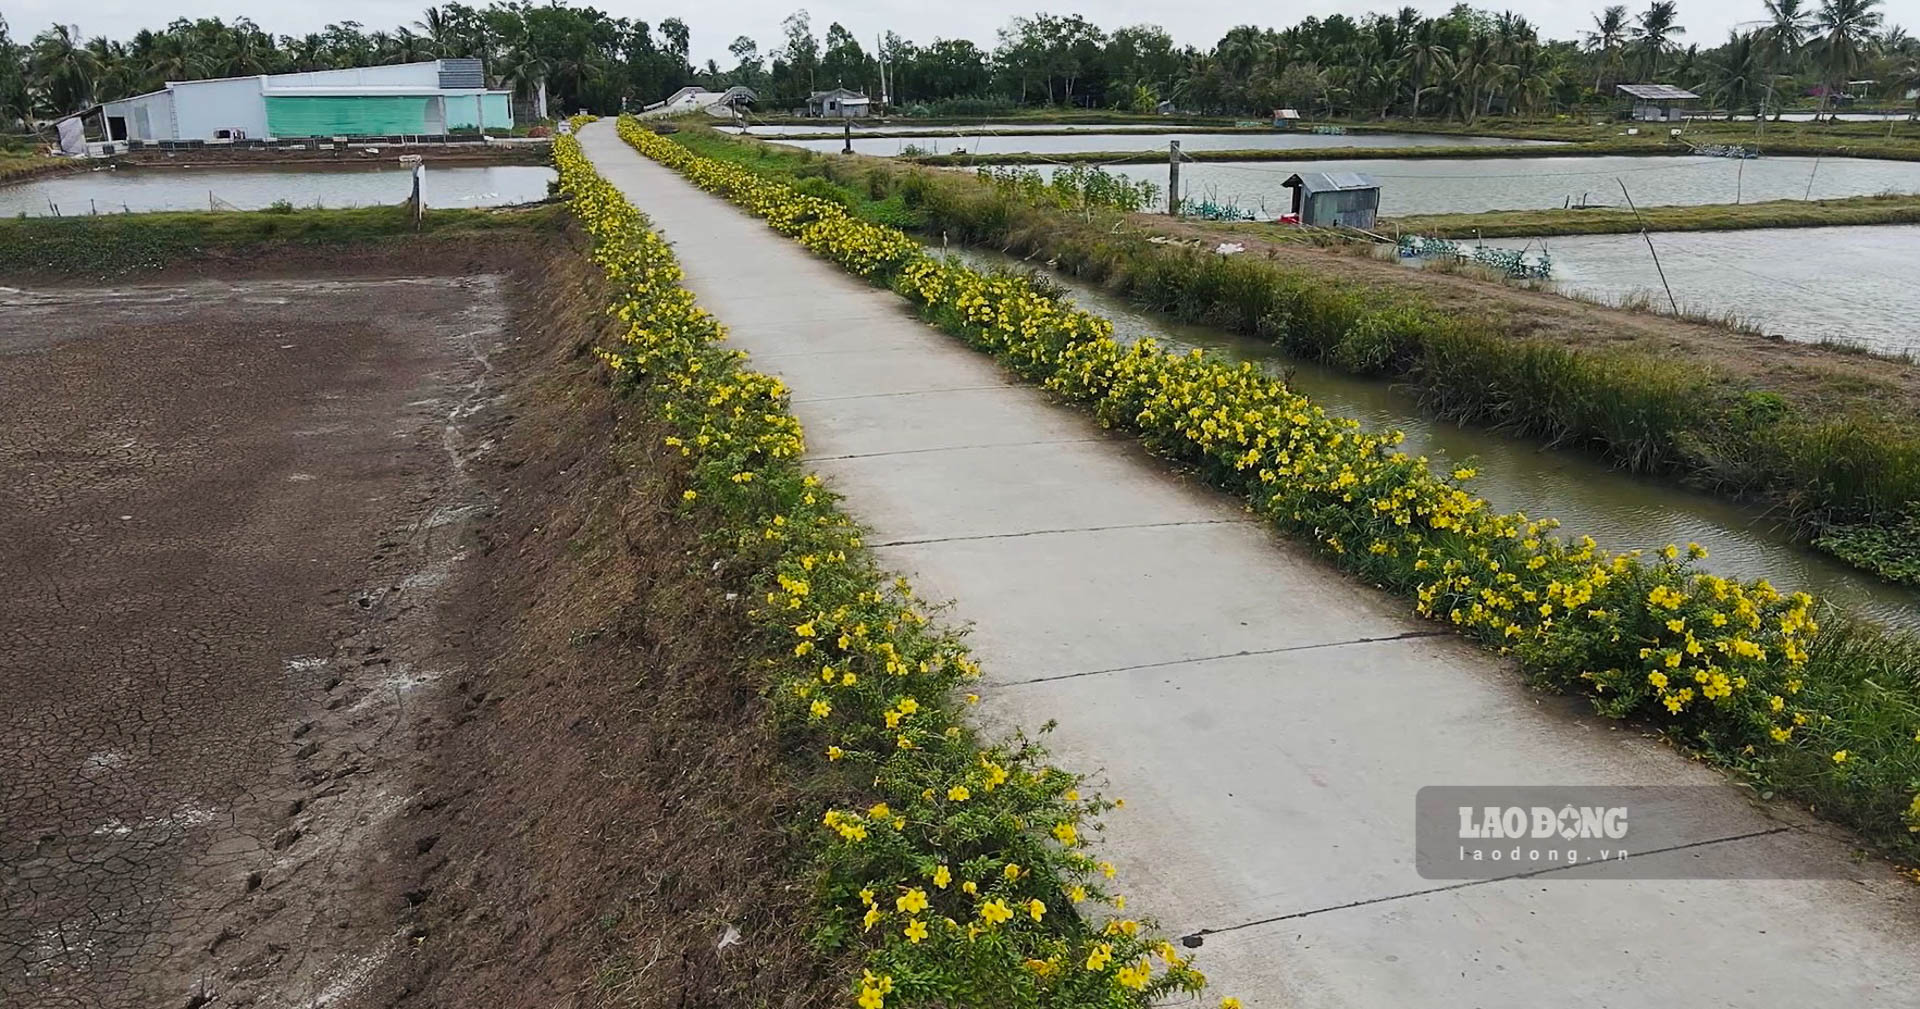 Tuyến đường đầy hoa giữa vùng tôm - lúa của xã Nông thôn mới Gia Hòa 1 (Mỹ Xuyên, Sóc Trăng). Ảnh: Phương Anh